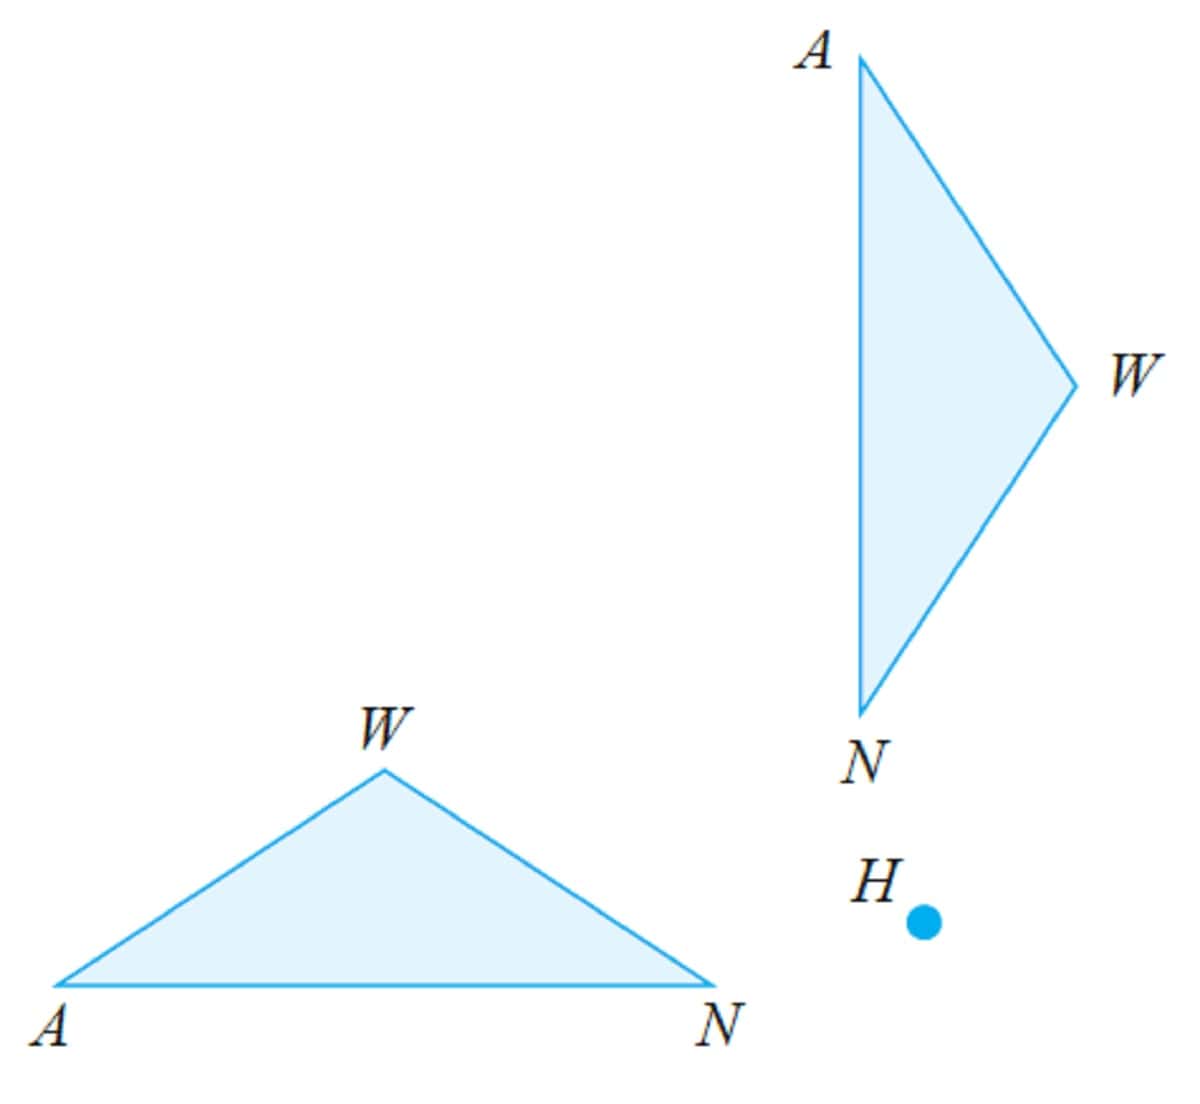 Salinlah ΔWAN berikut Kemudian rotasikan segitiga tersebut sebesar 90° searah jarum jam yang berpusat di titik H